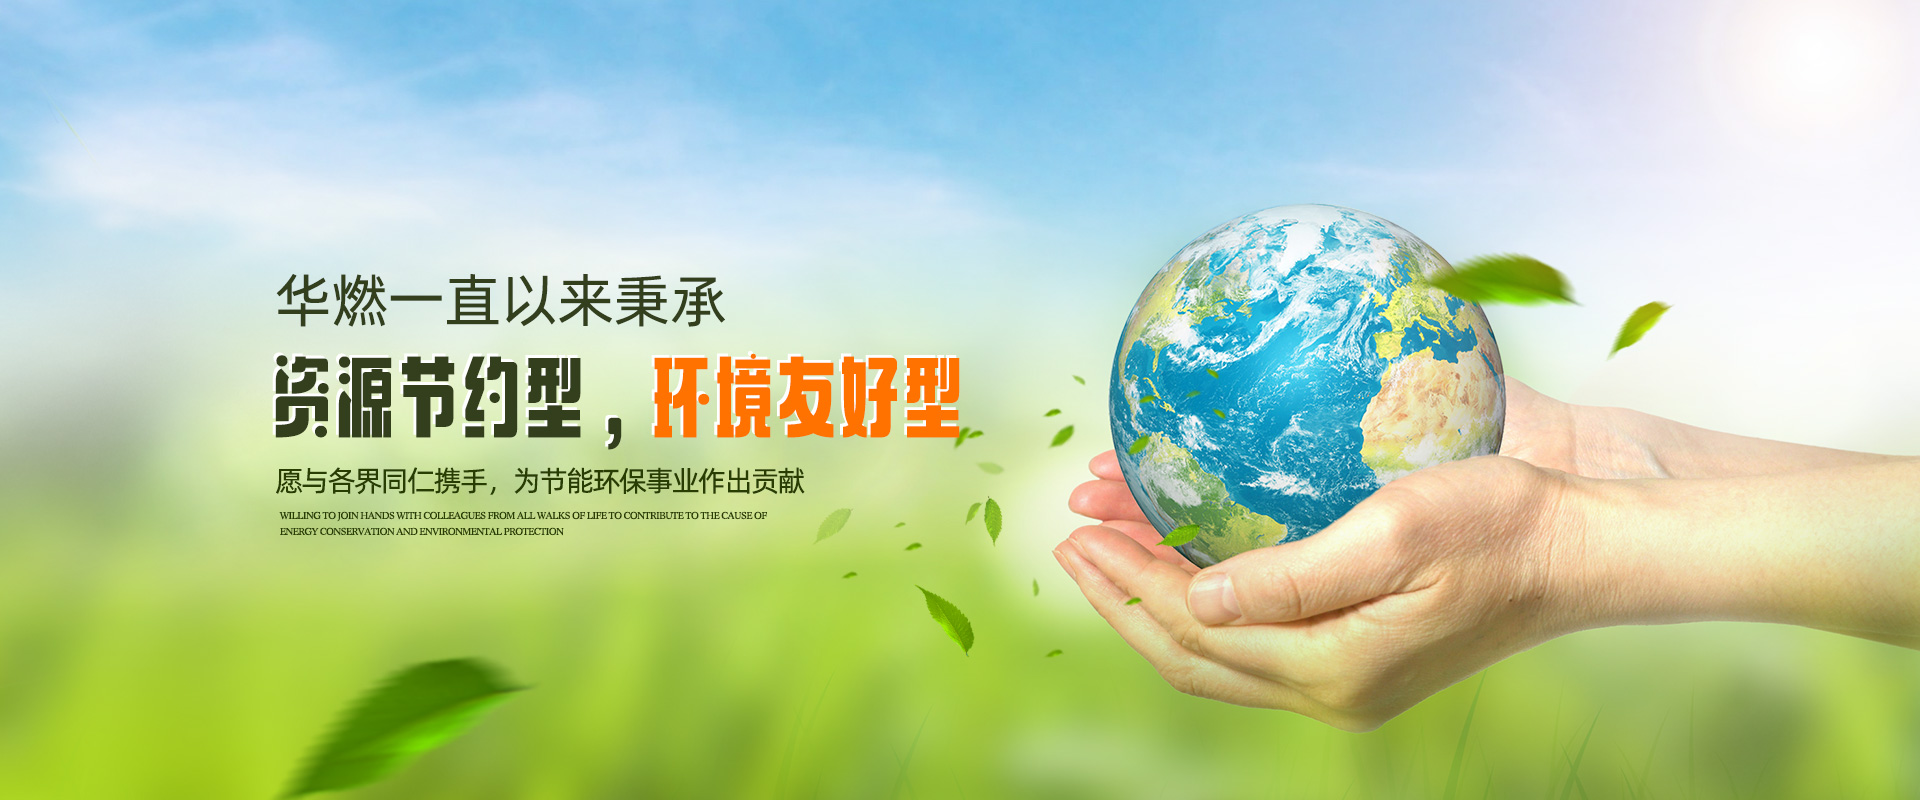 河南再生资源回收-再生资源回收公司-永利欢乐娱人城(中国)集团有限公司